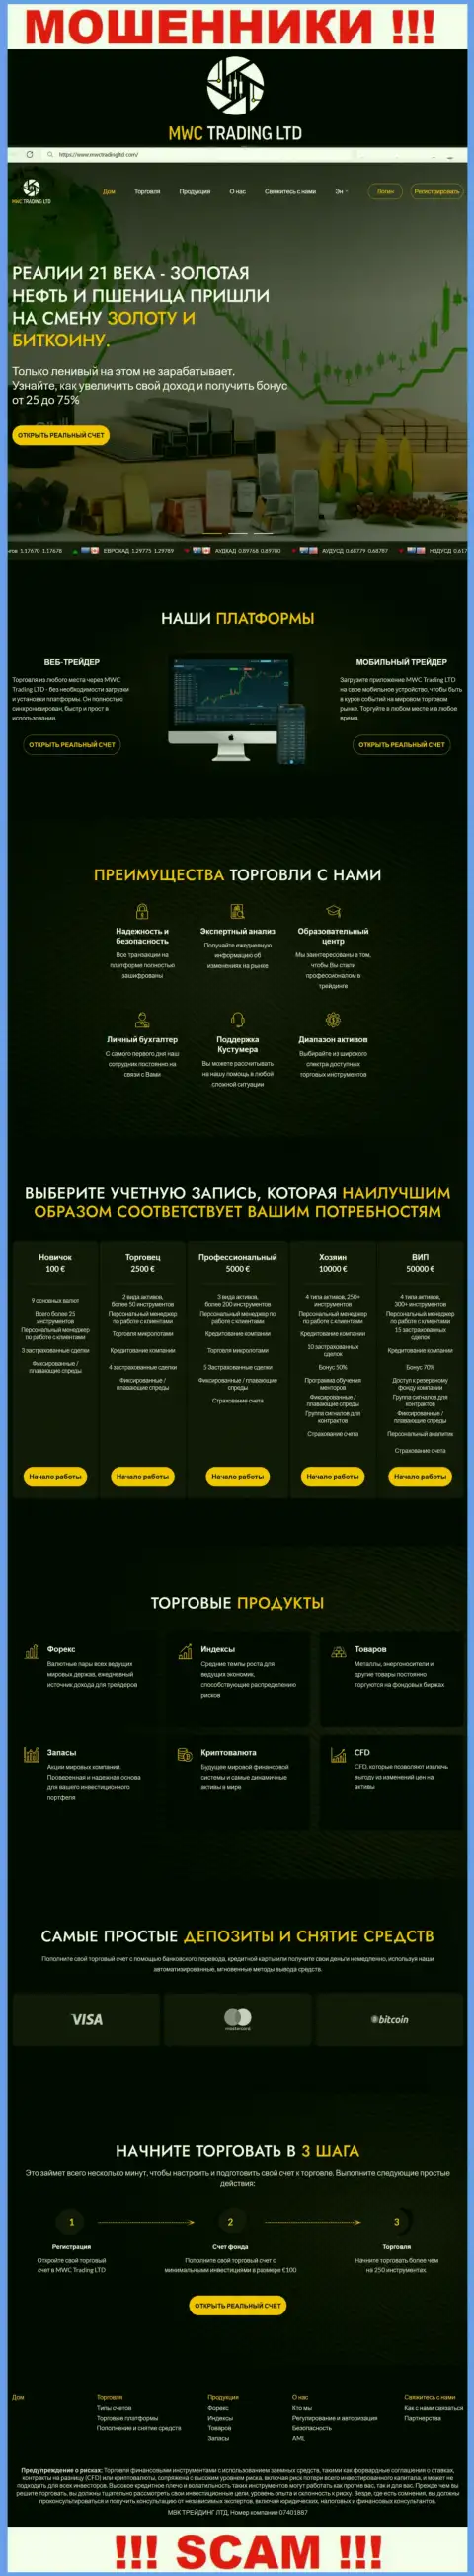 Скрин официального информационного ресурса жульнической компании МВК Трейдинг Лтд